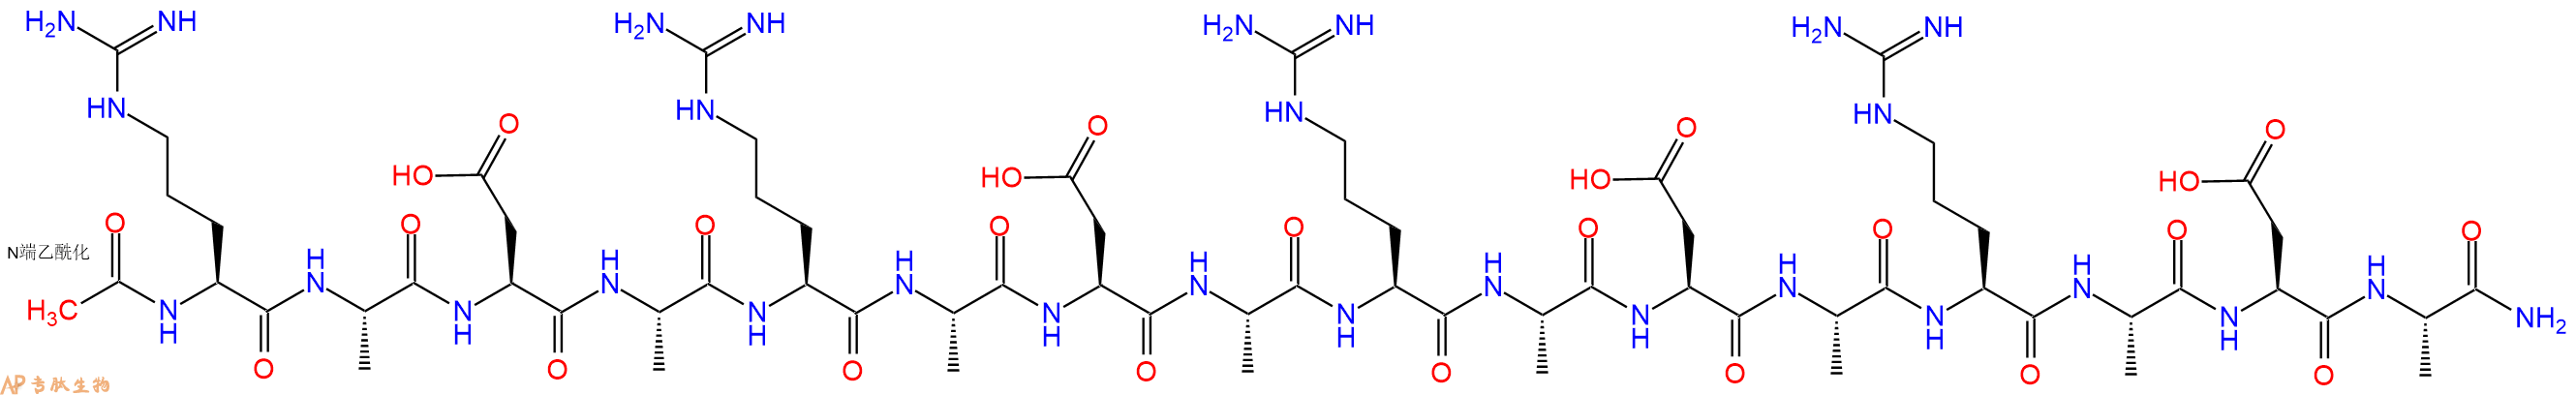 专肽生物产品自组装多肽RADA16